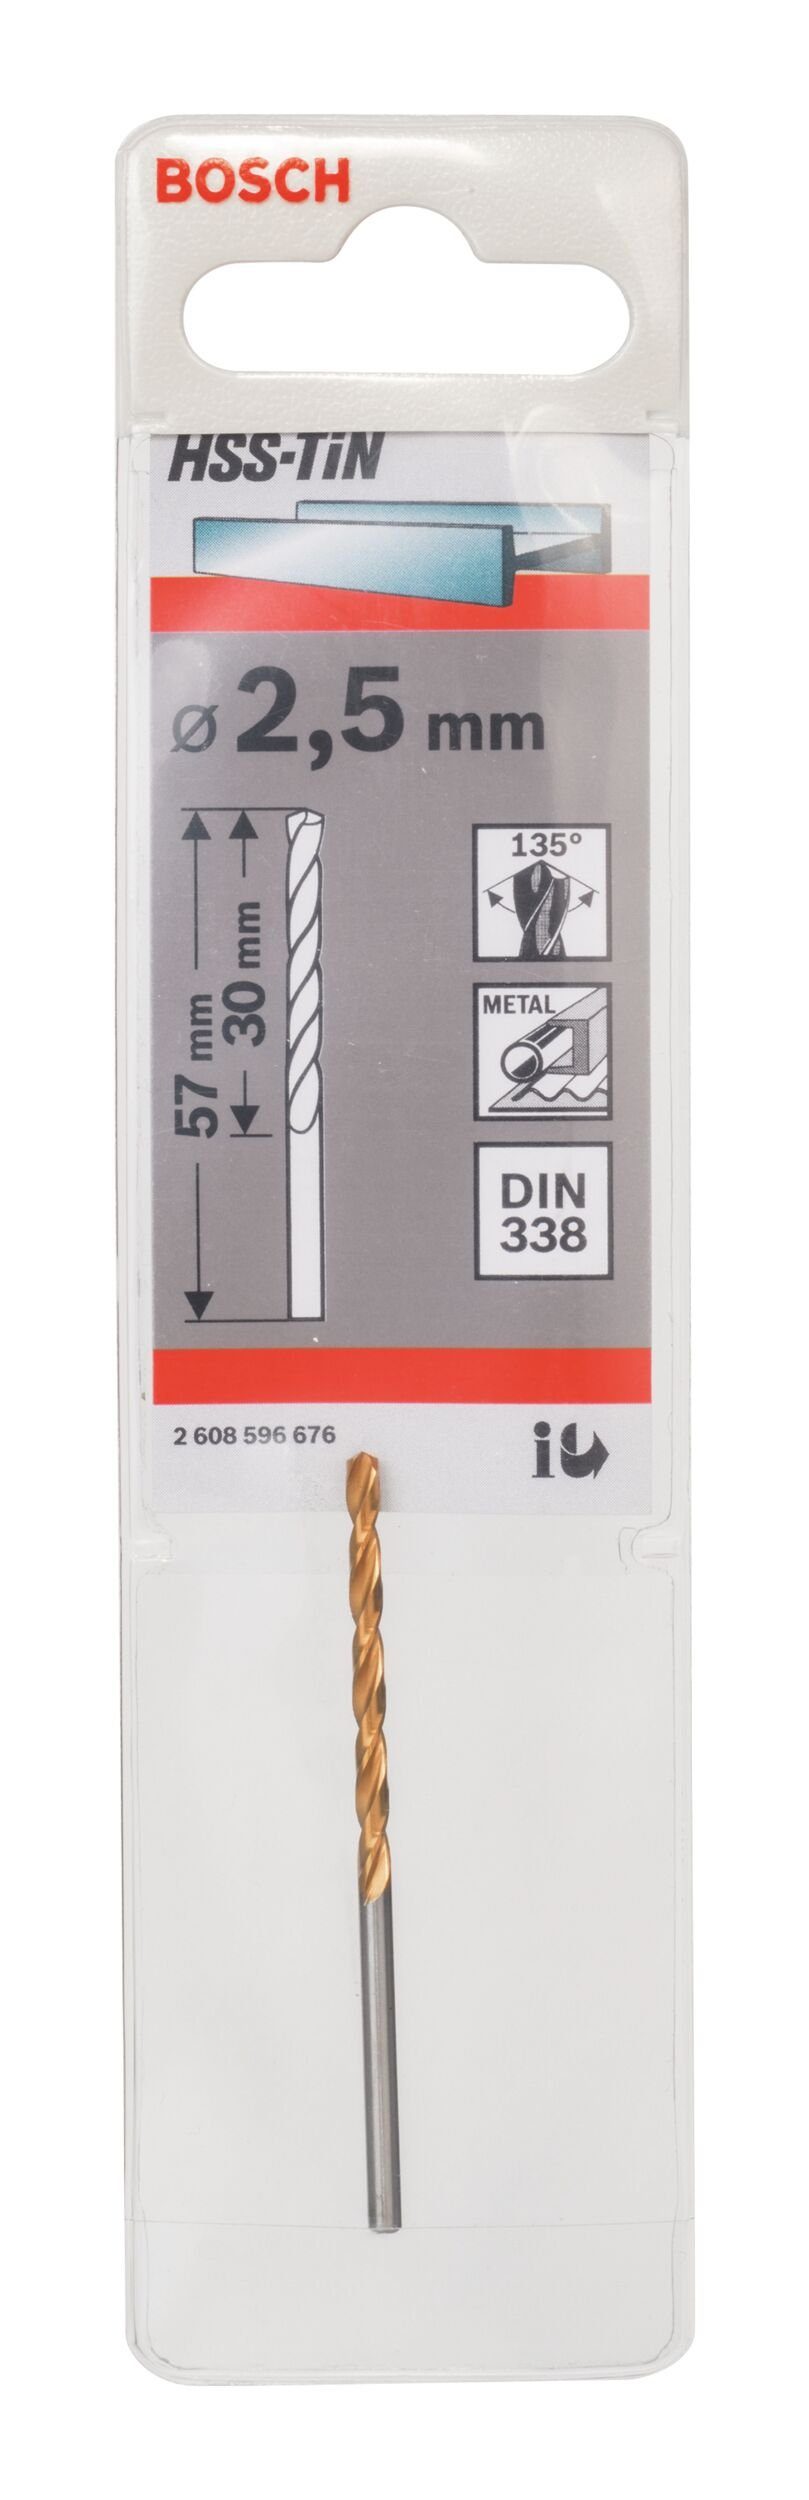 x 2,5 x 338) mm (DIN - BOSCH - 30 57 Metallbohrer, 1er-Pack HSS-TiN